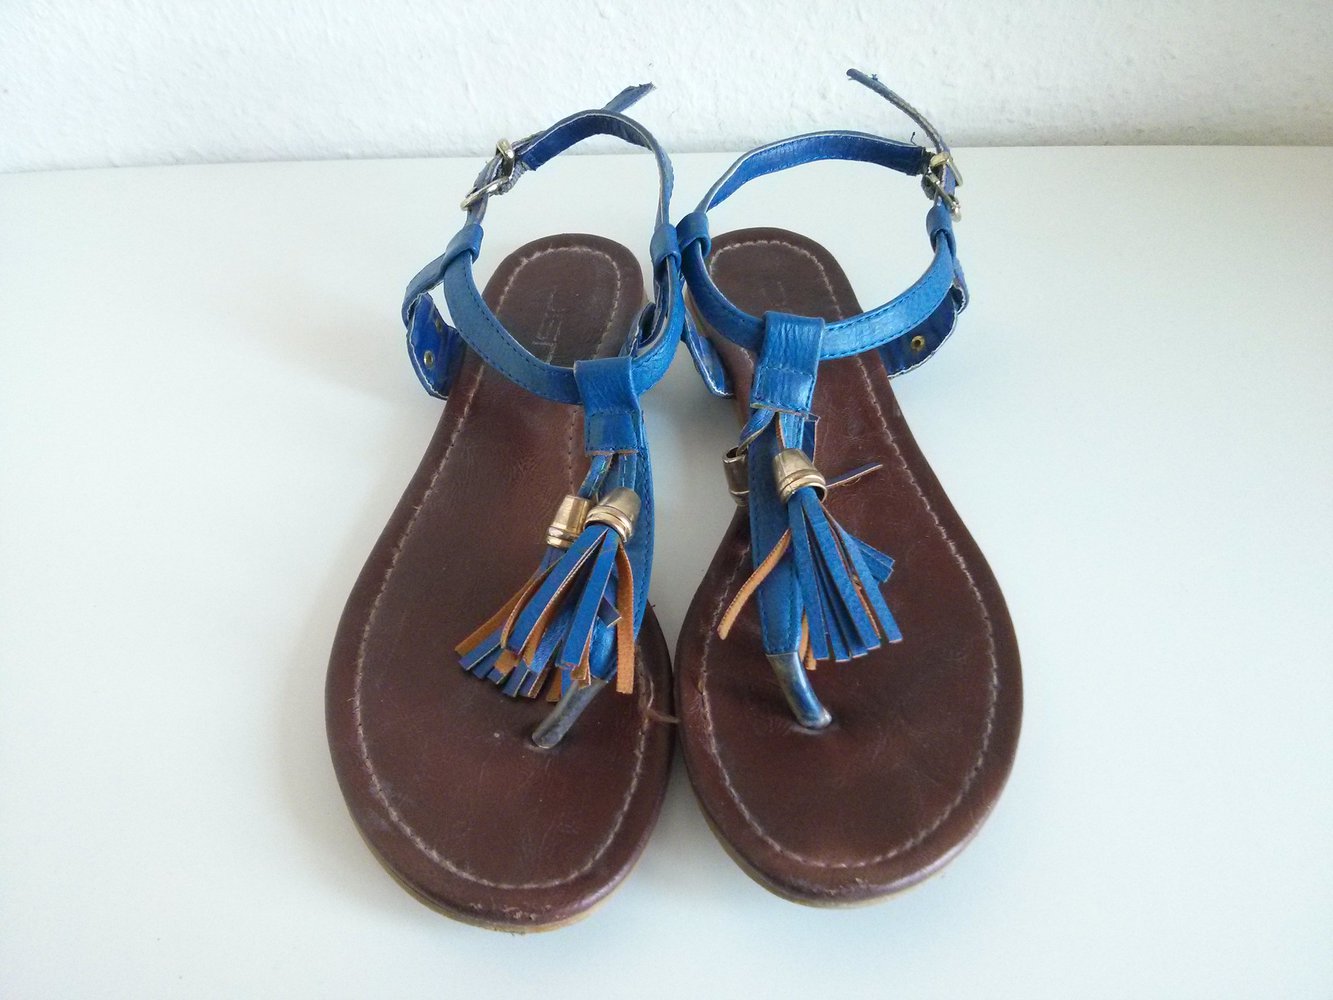 Süße Sandalen in Blau mit goldenen Details